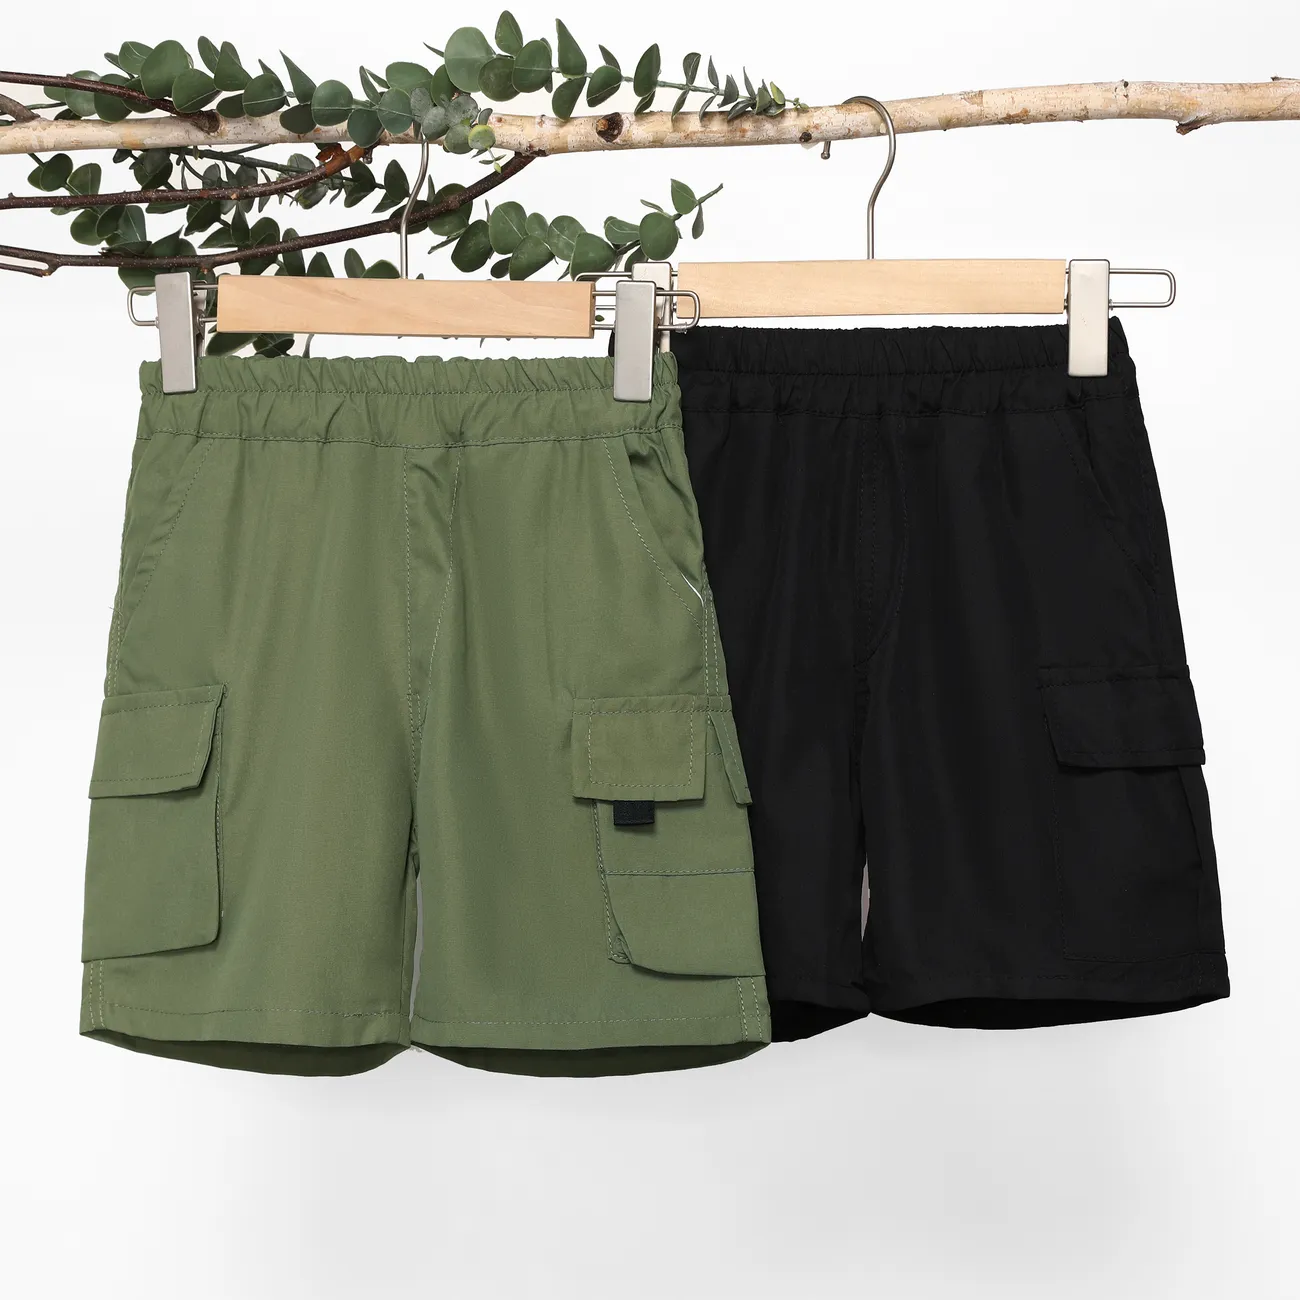 Lässige Shorts für Jungen mit aufgesetzten Taschen, 1-teiliges Set, einfarbig, 100% Polyester, maschinenwaschbar Armeegrün big image 1